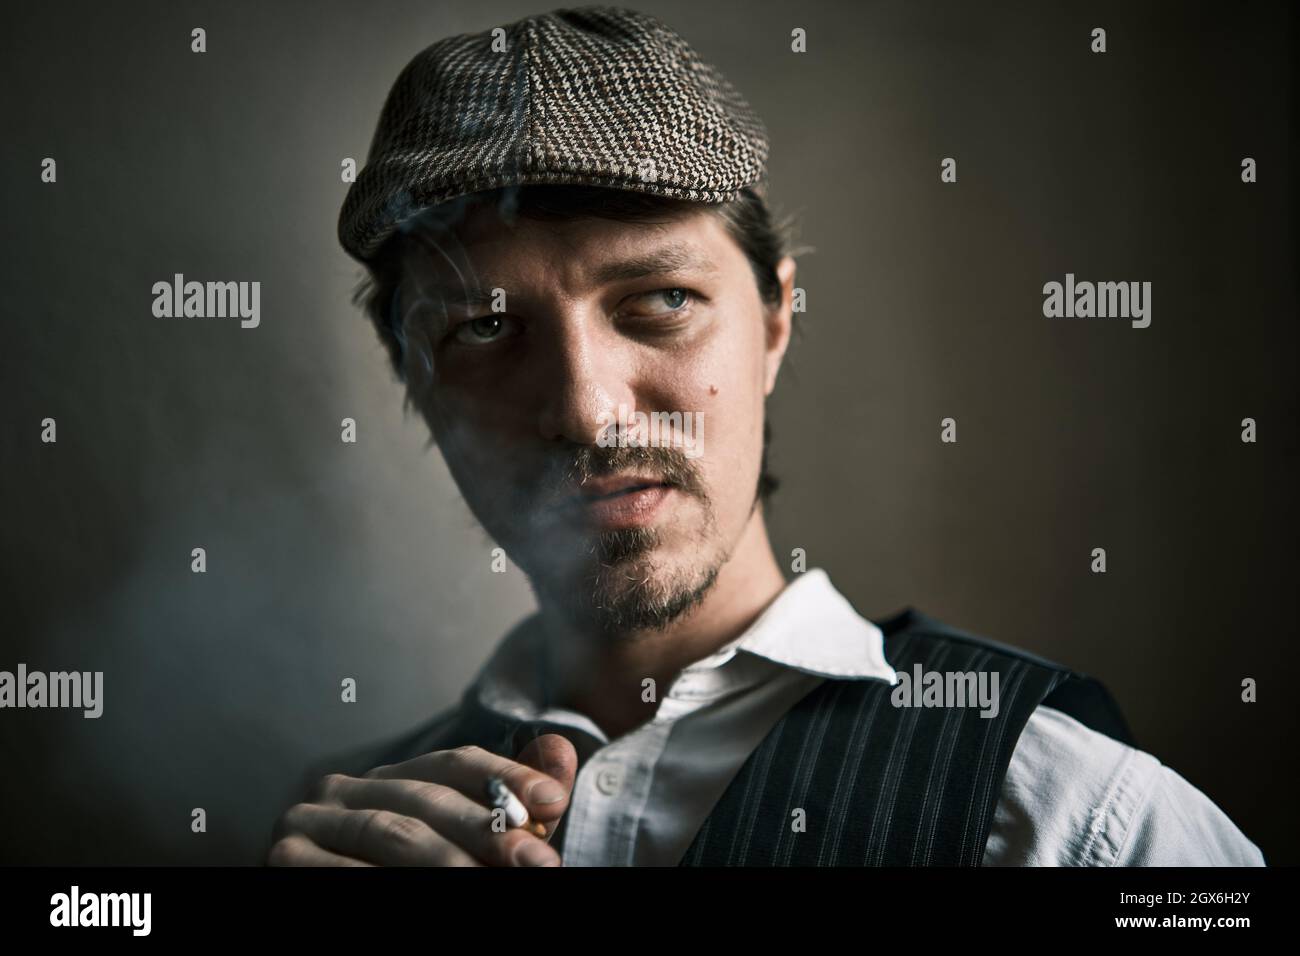 Un jeune homme fume une cigarette, souffle de la fumée, habillé dans un style rétro, dans un béret, une prise de vue cinématographique, gros plan Banque D'Images